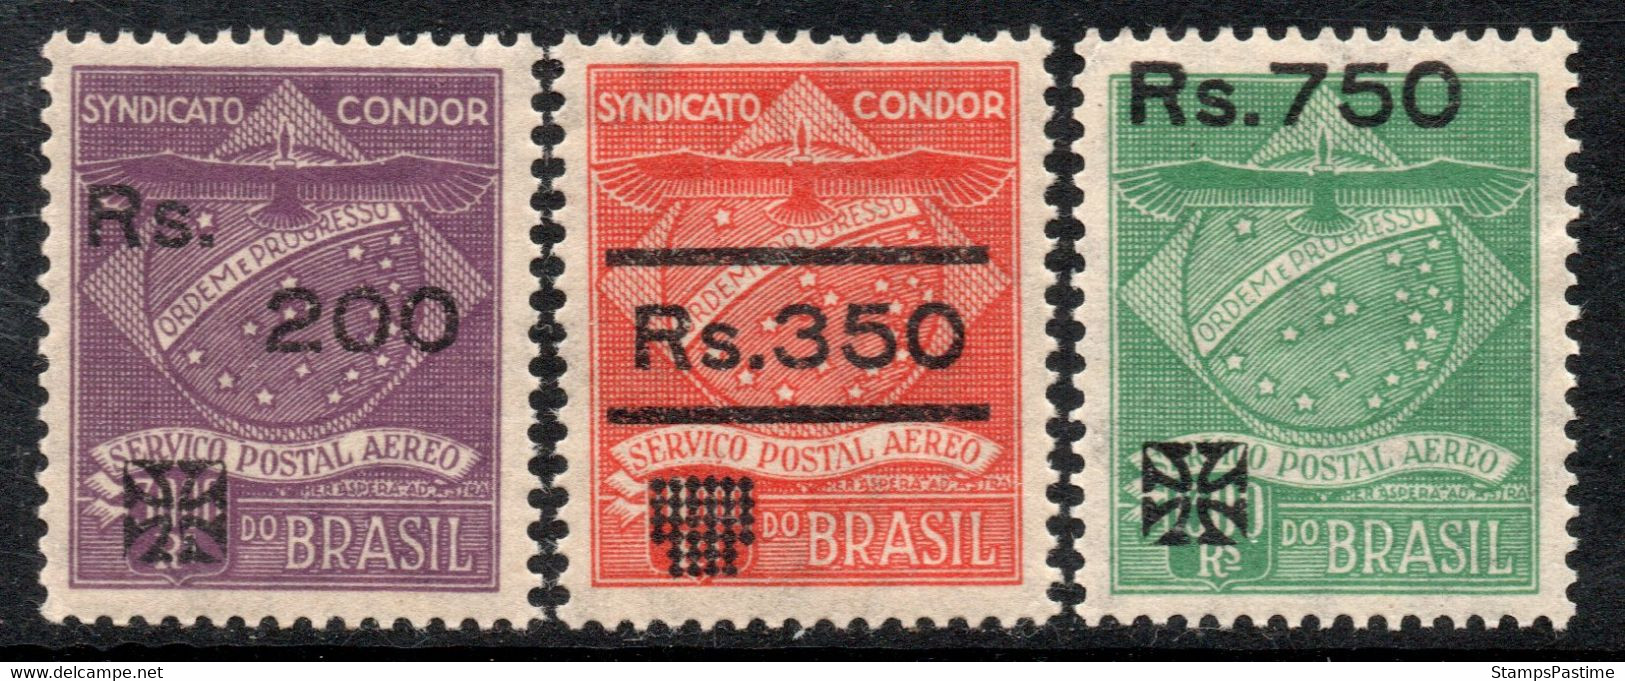 BRASIL – BRAZIL Rara Serie X 3 Sellos Mint COMPAÑÍA CÓNDOR REVALORIZADOS Año 1930 – Valorizados En Catálogo € 24,00 - Airmail (Private Companies)